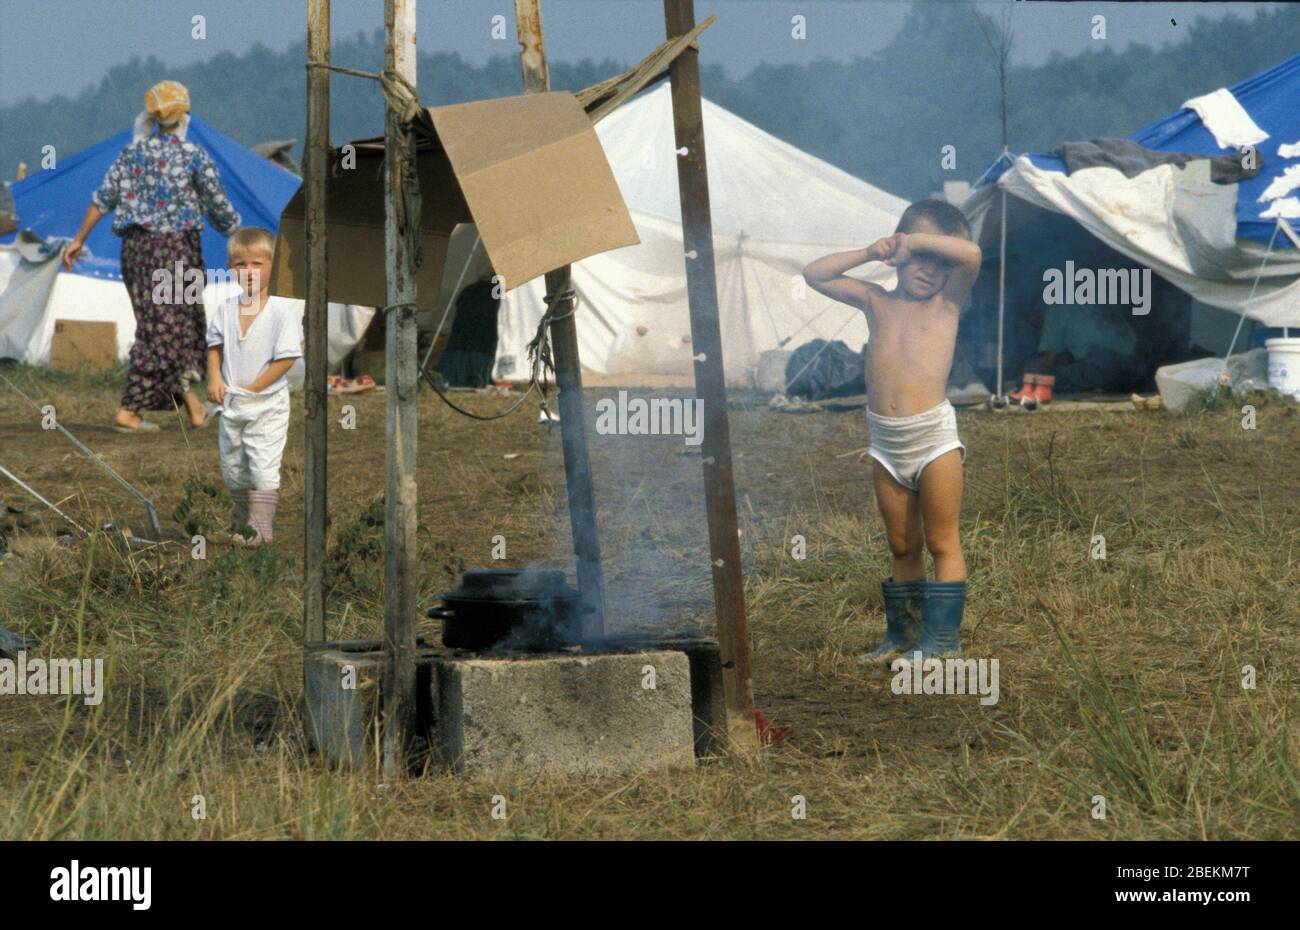 1995 - Flugplatz Tuzla vorübergehendes Flüchtlingslager für bosnische Muslime, die vor dem Massaker von Srebrenica während des Bosnienkrieges fliehen Stockfoto